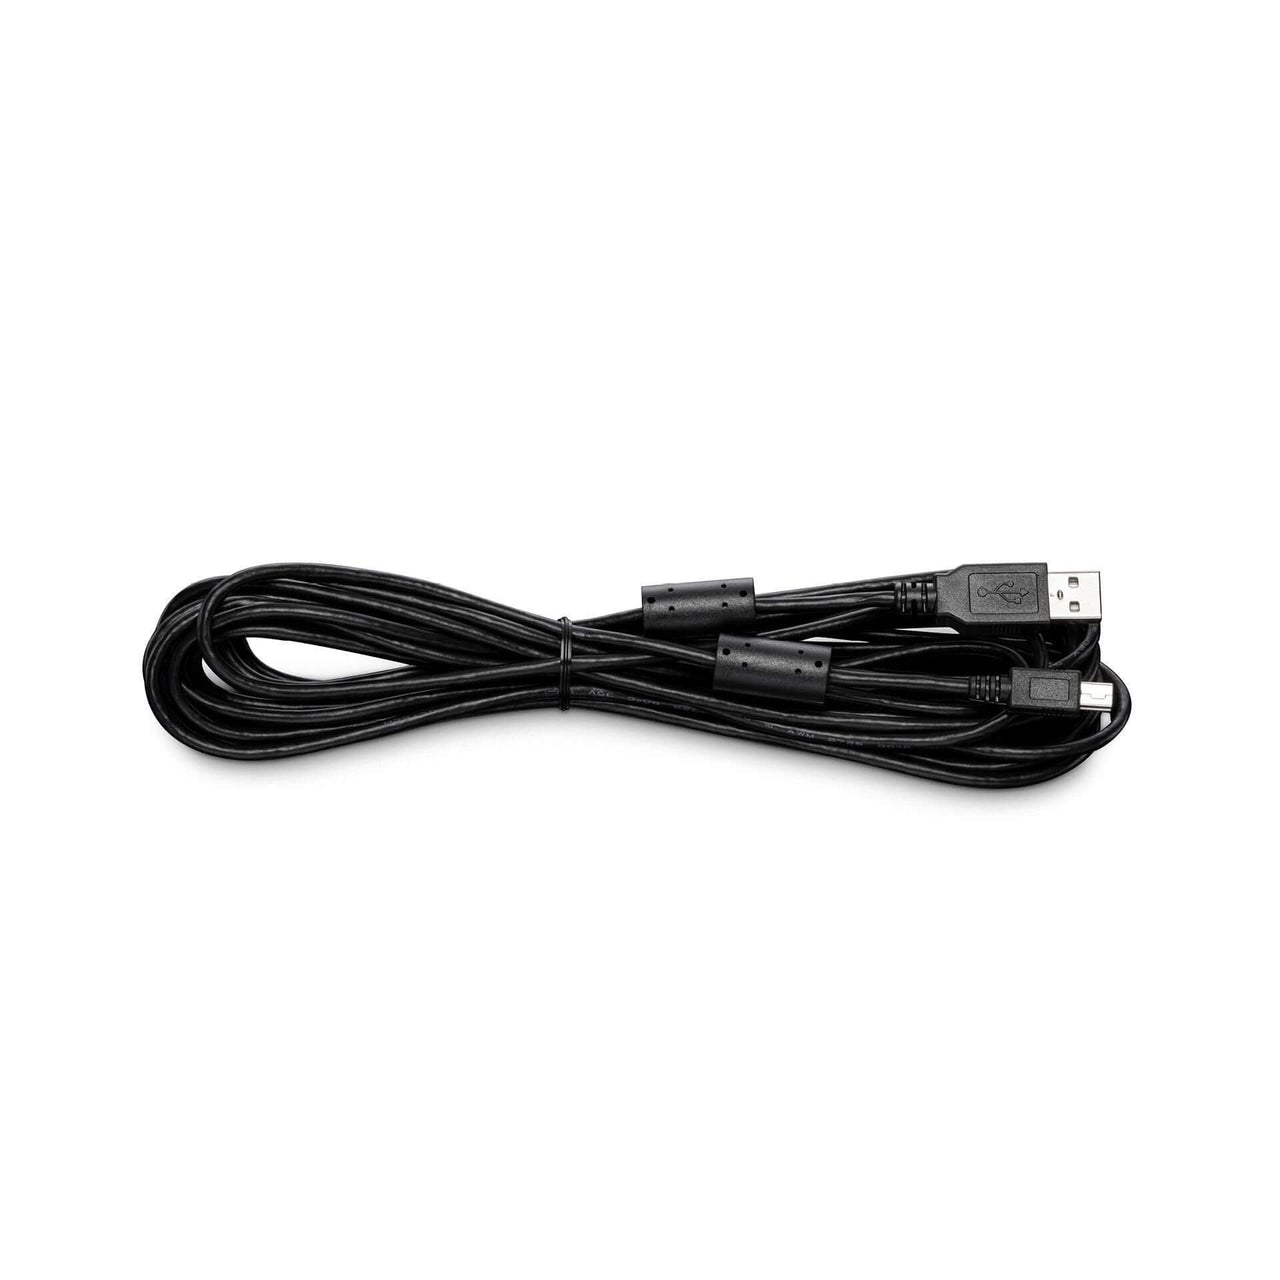 Wacom USB cable for STU-530 / STU-430 (4.5m) Dubai UAE